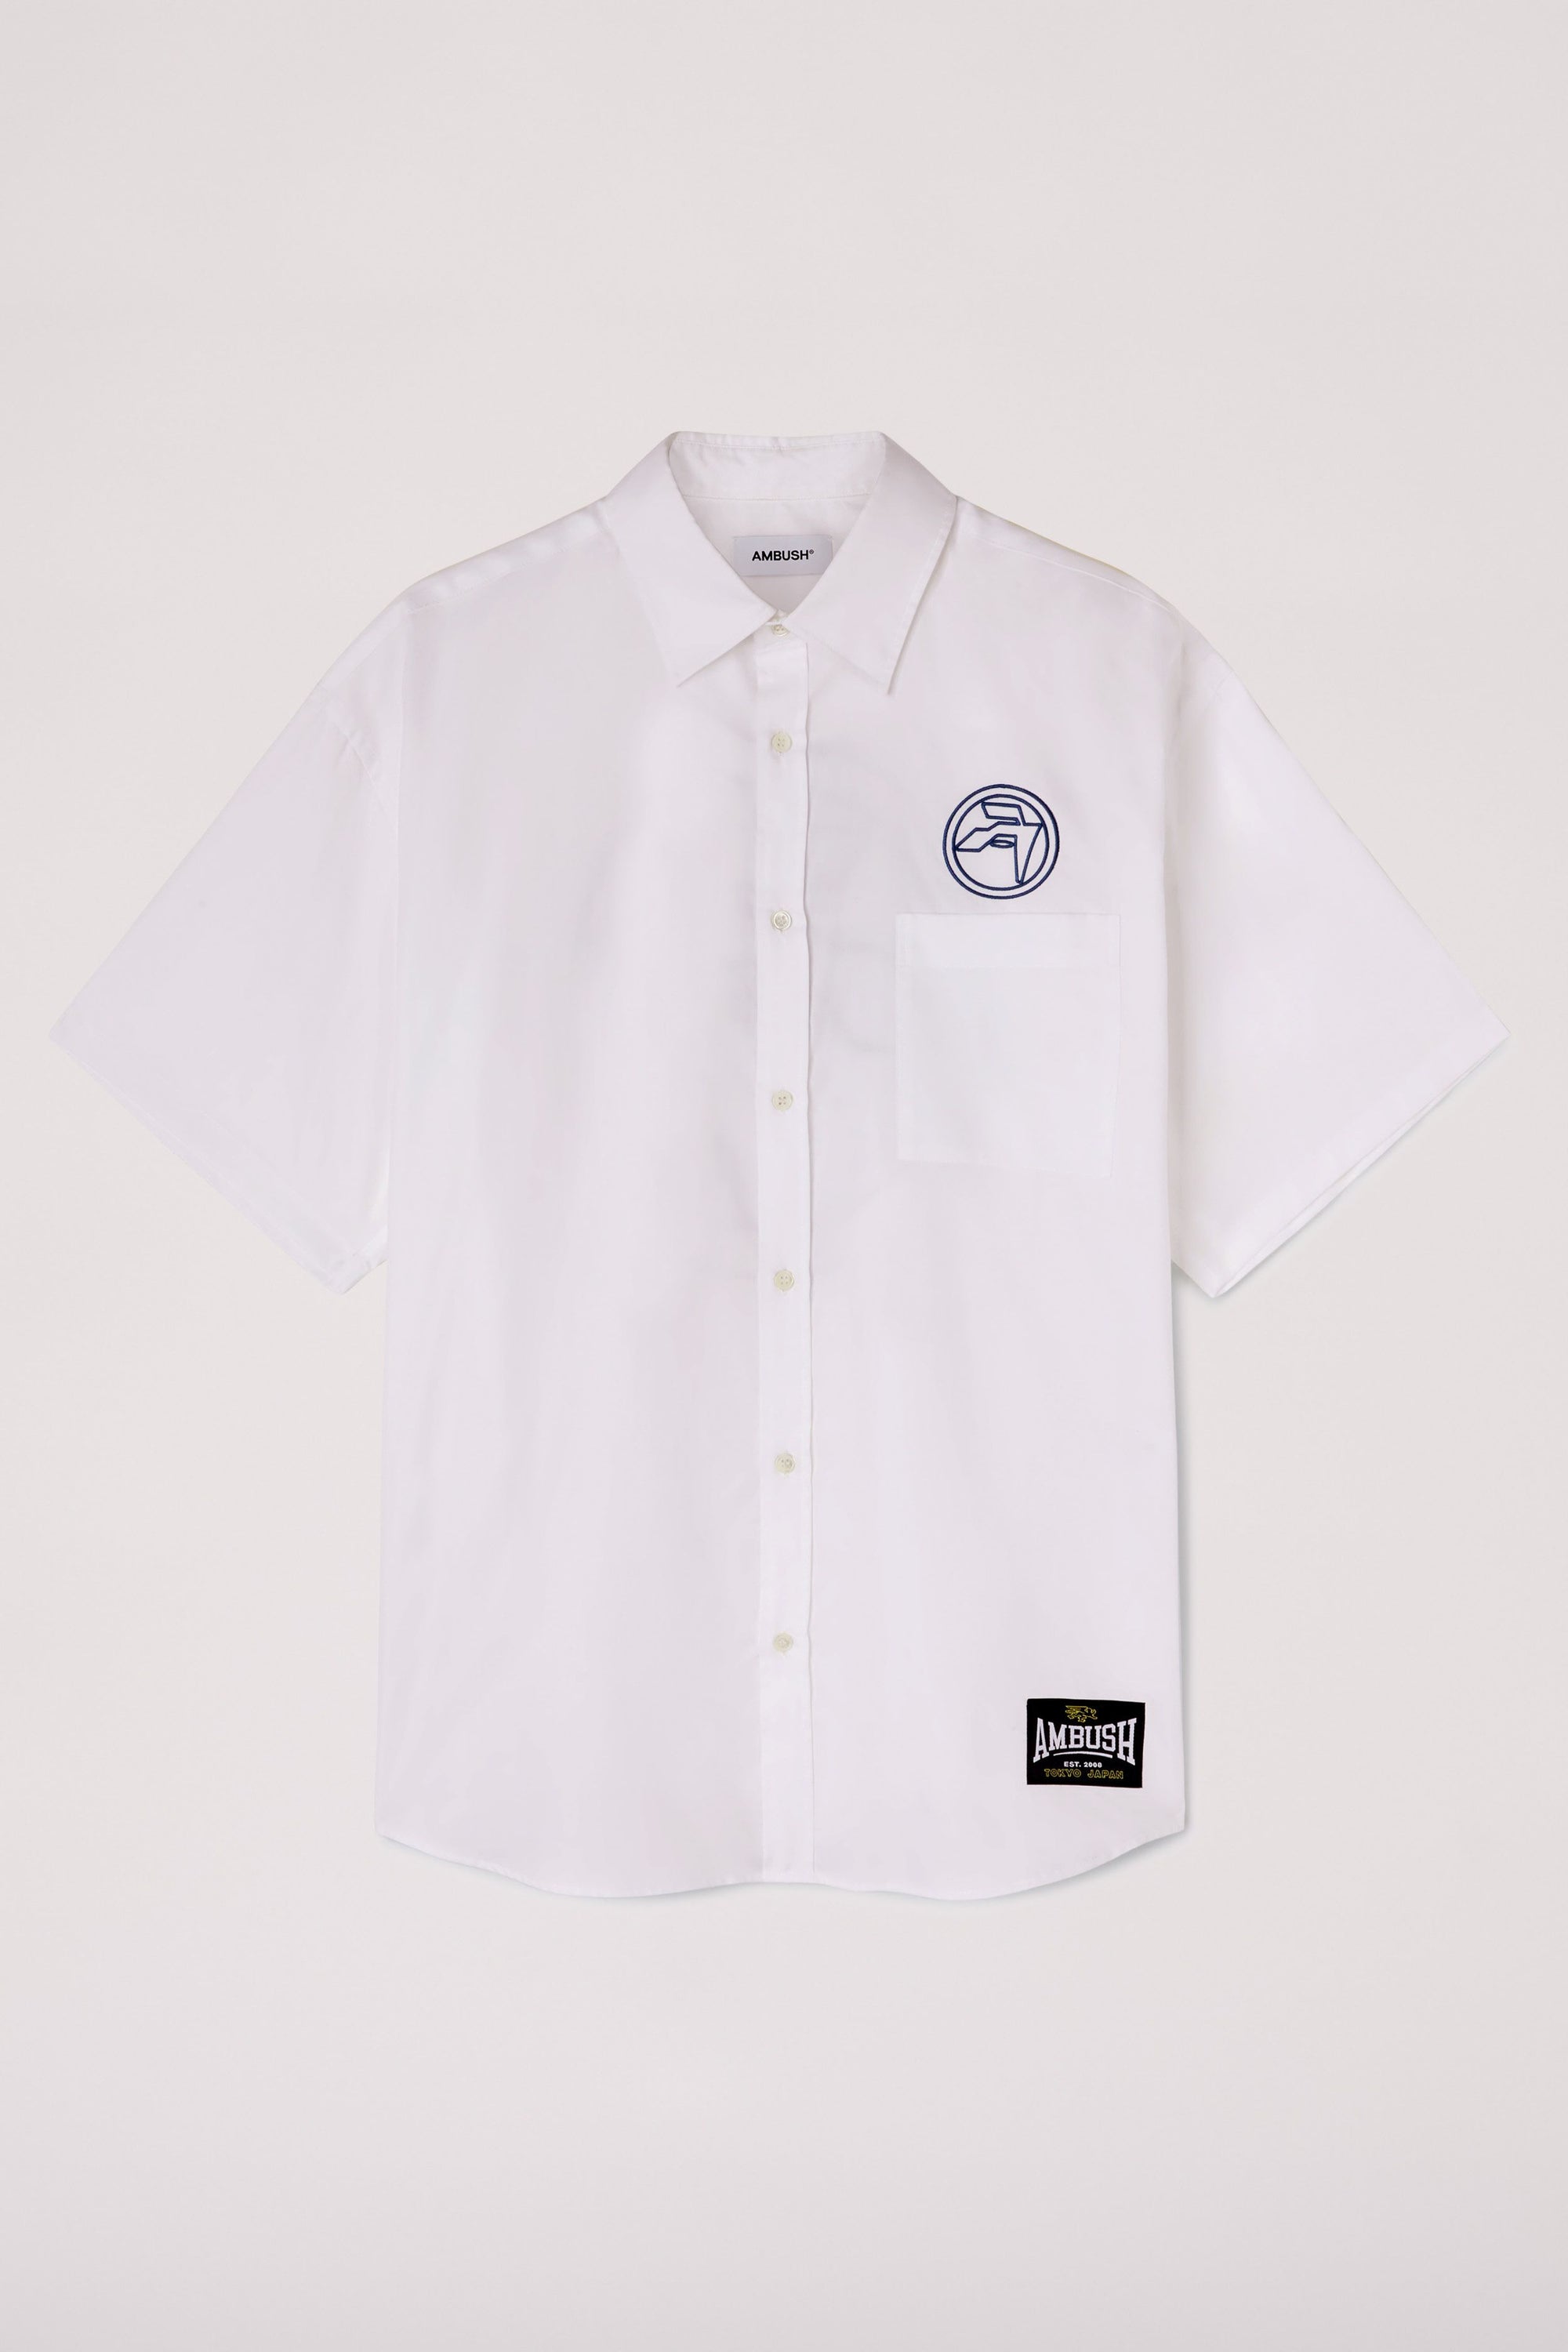 AMBUSH Circle Emblem Shirt - White